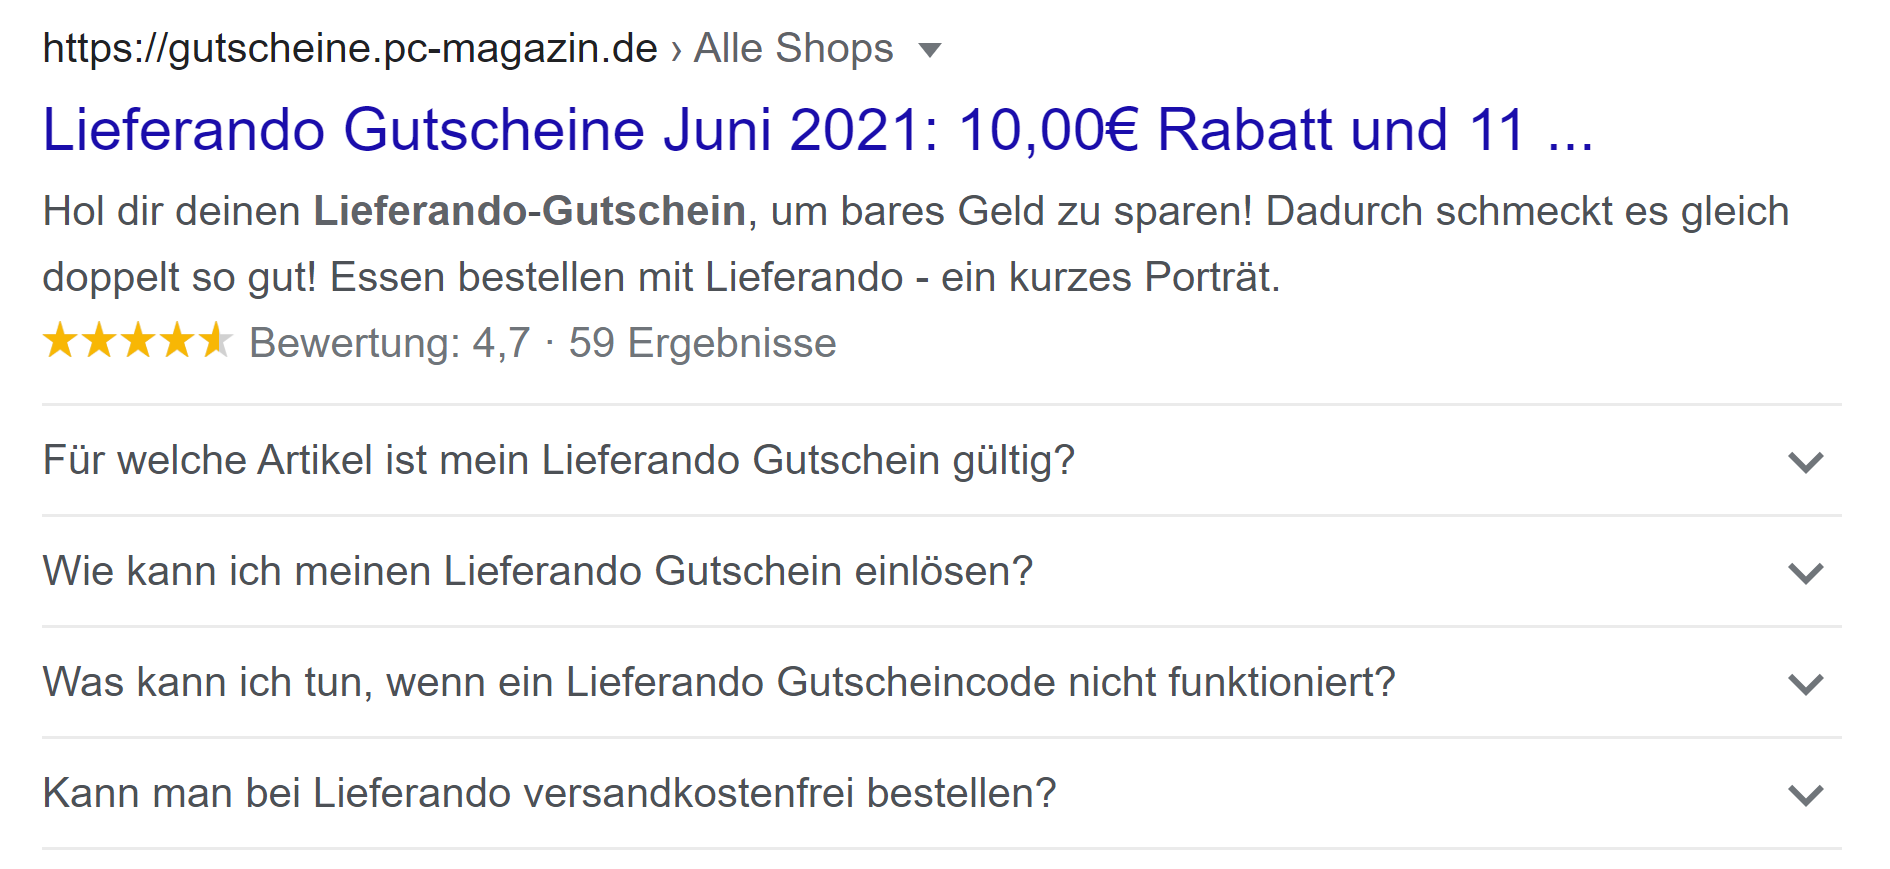 Google: deutsches Suchergebnis mit mehr als zwei FAQs